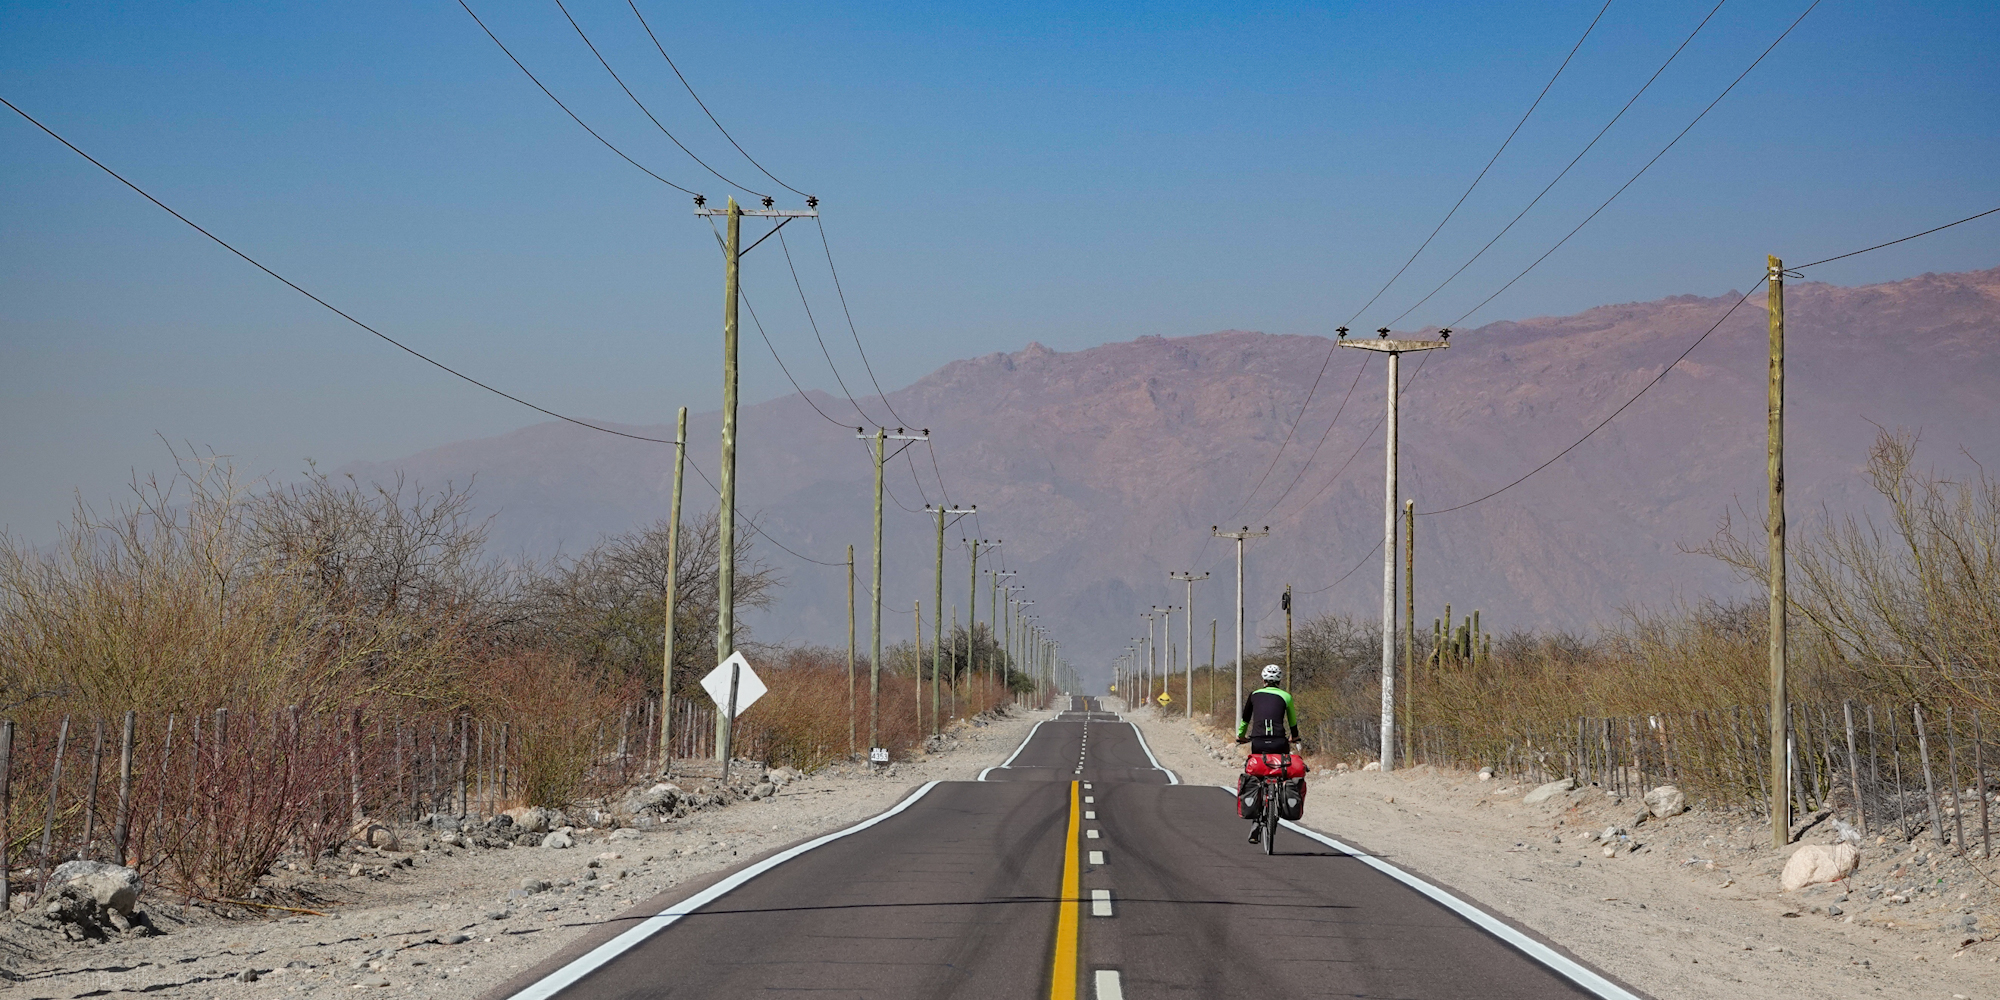 Cycling Ruta40 from Angastaco to San Carlos   